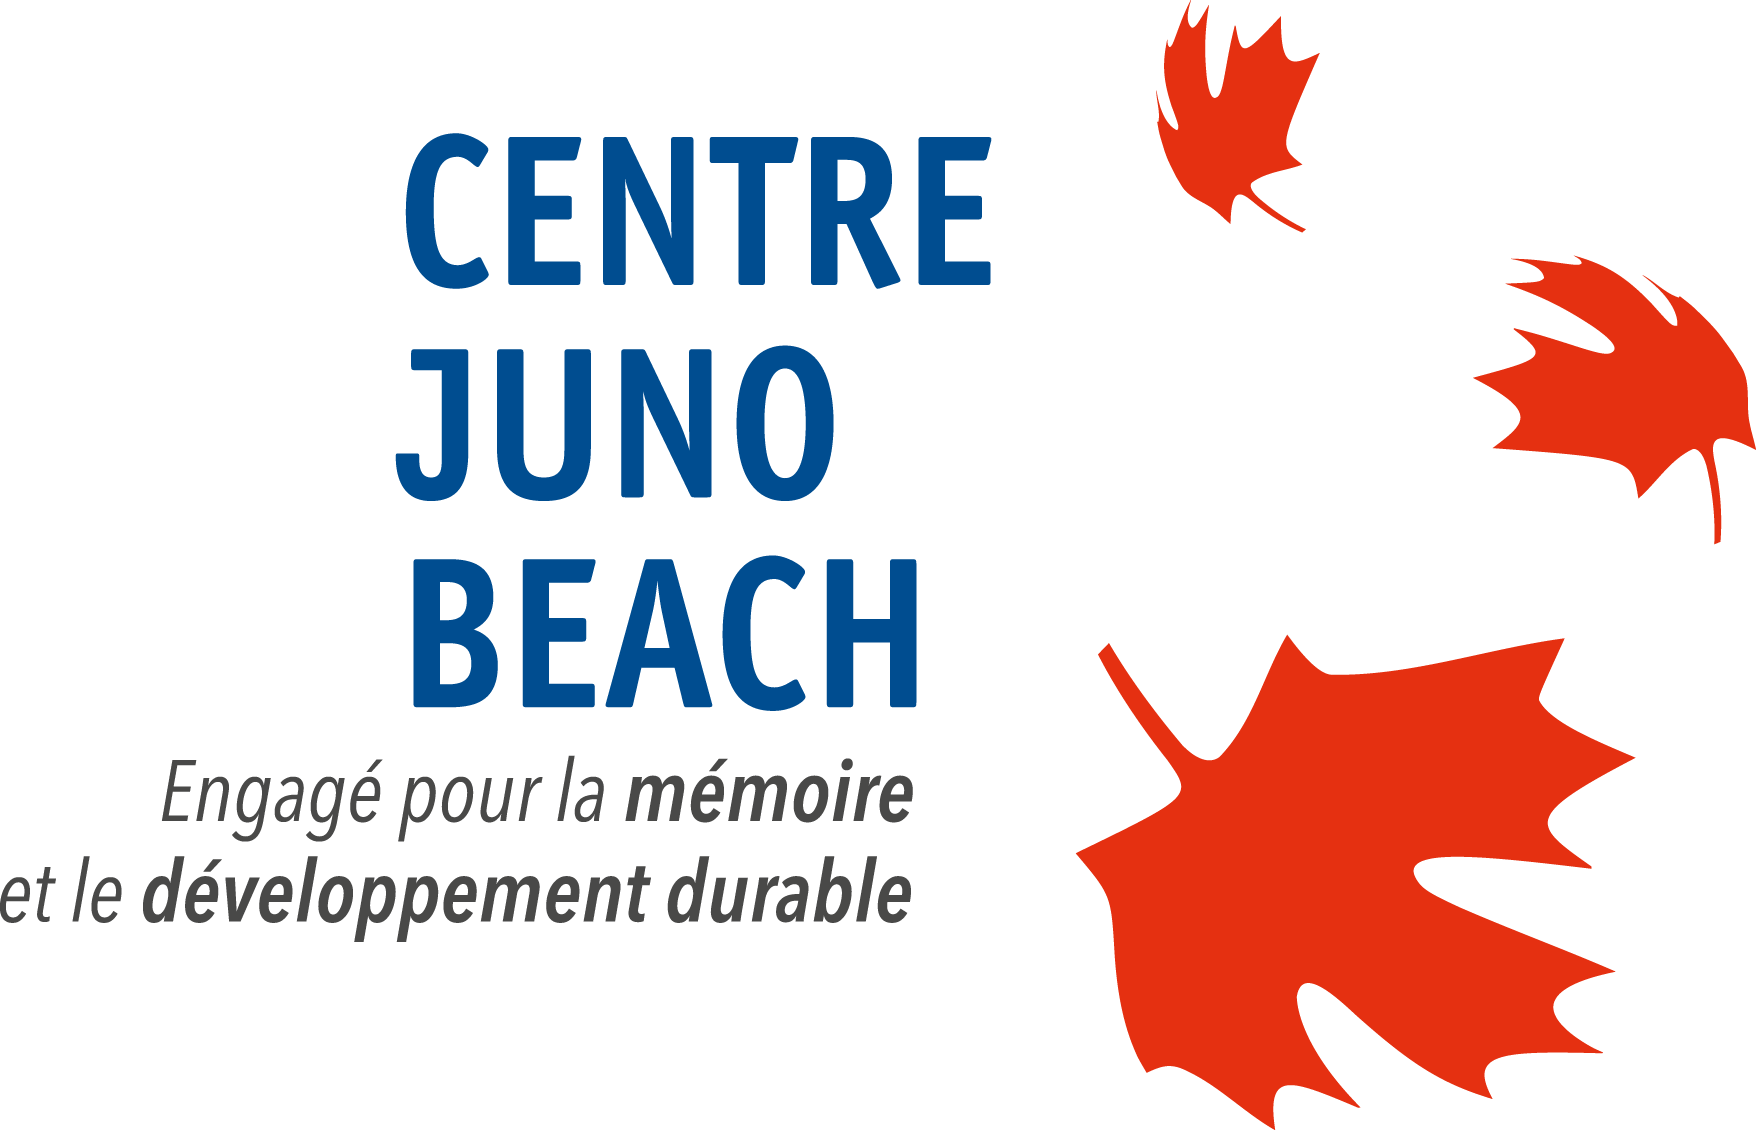 Centre Juno Beach